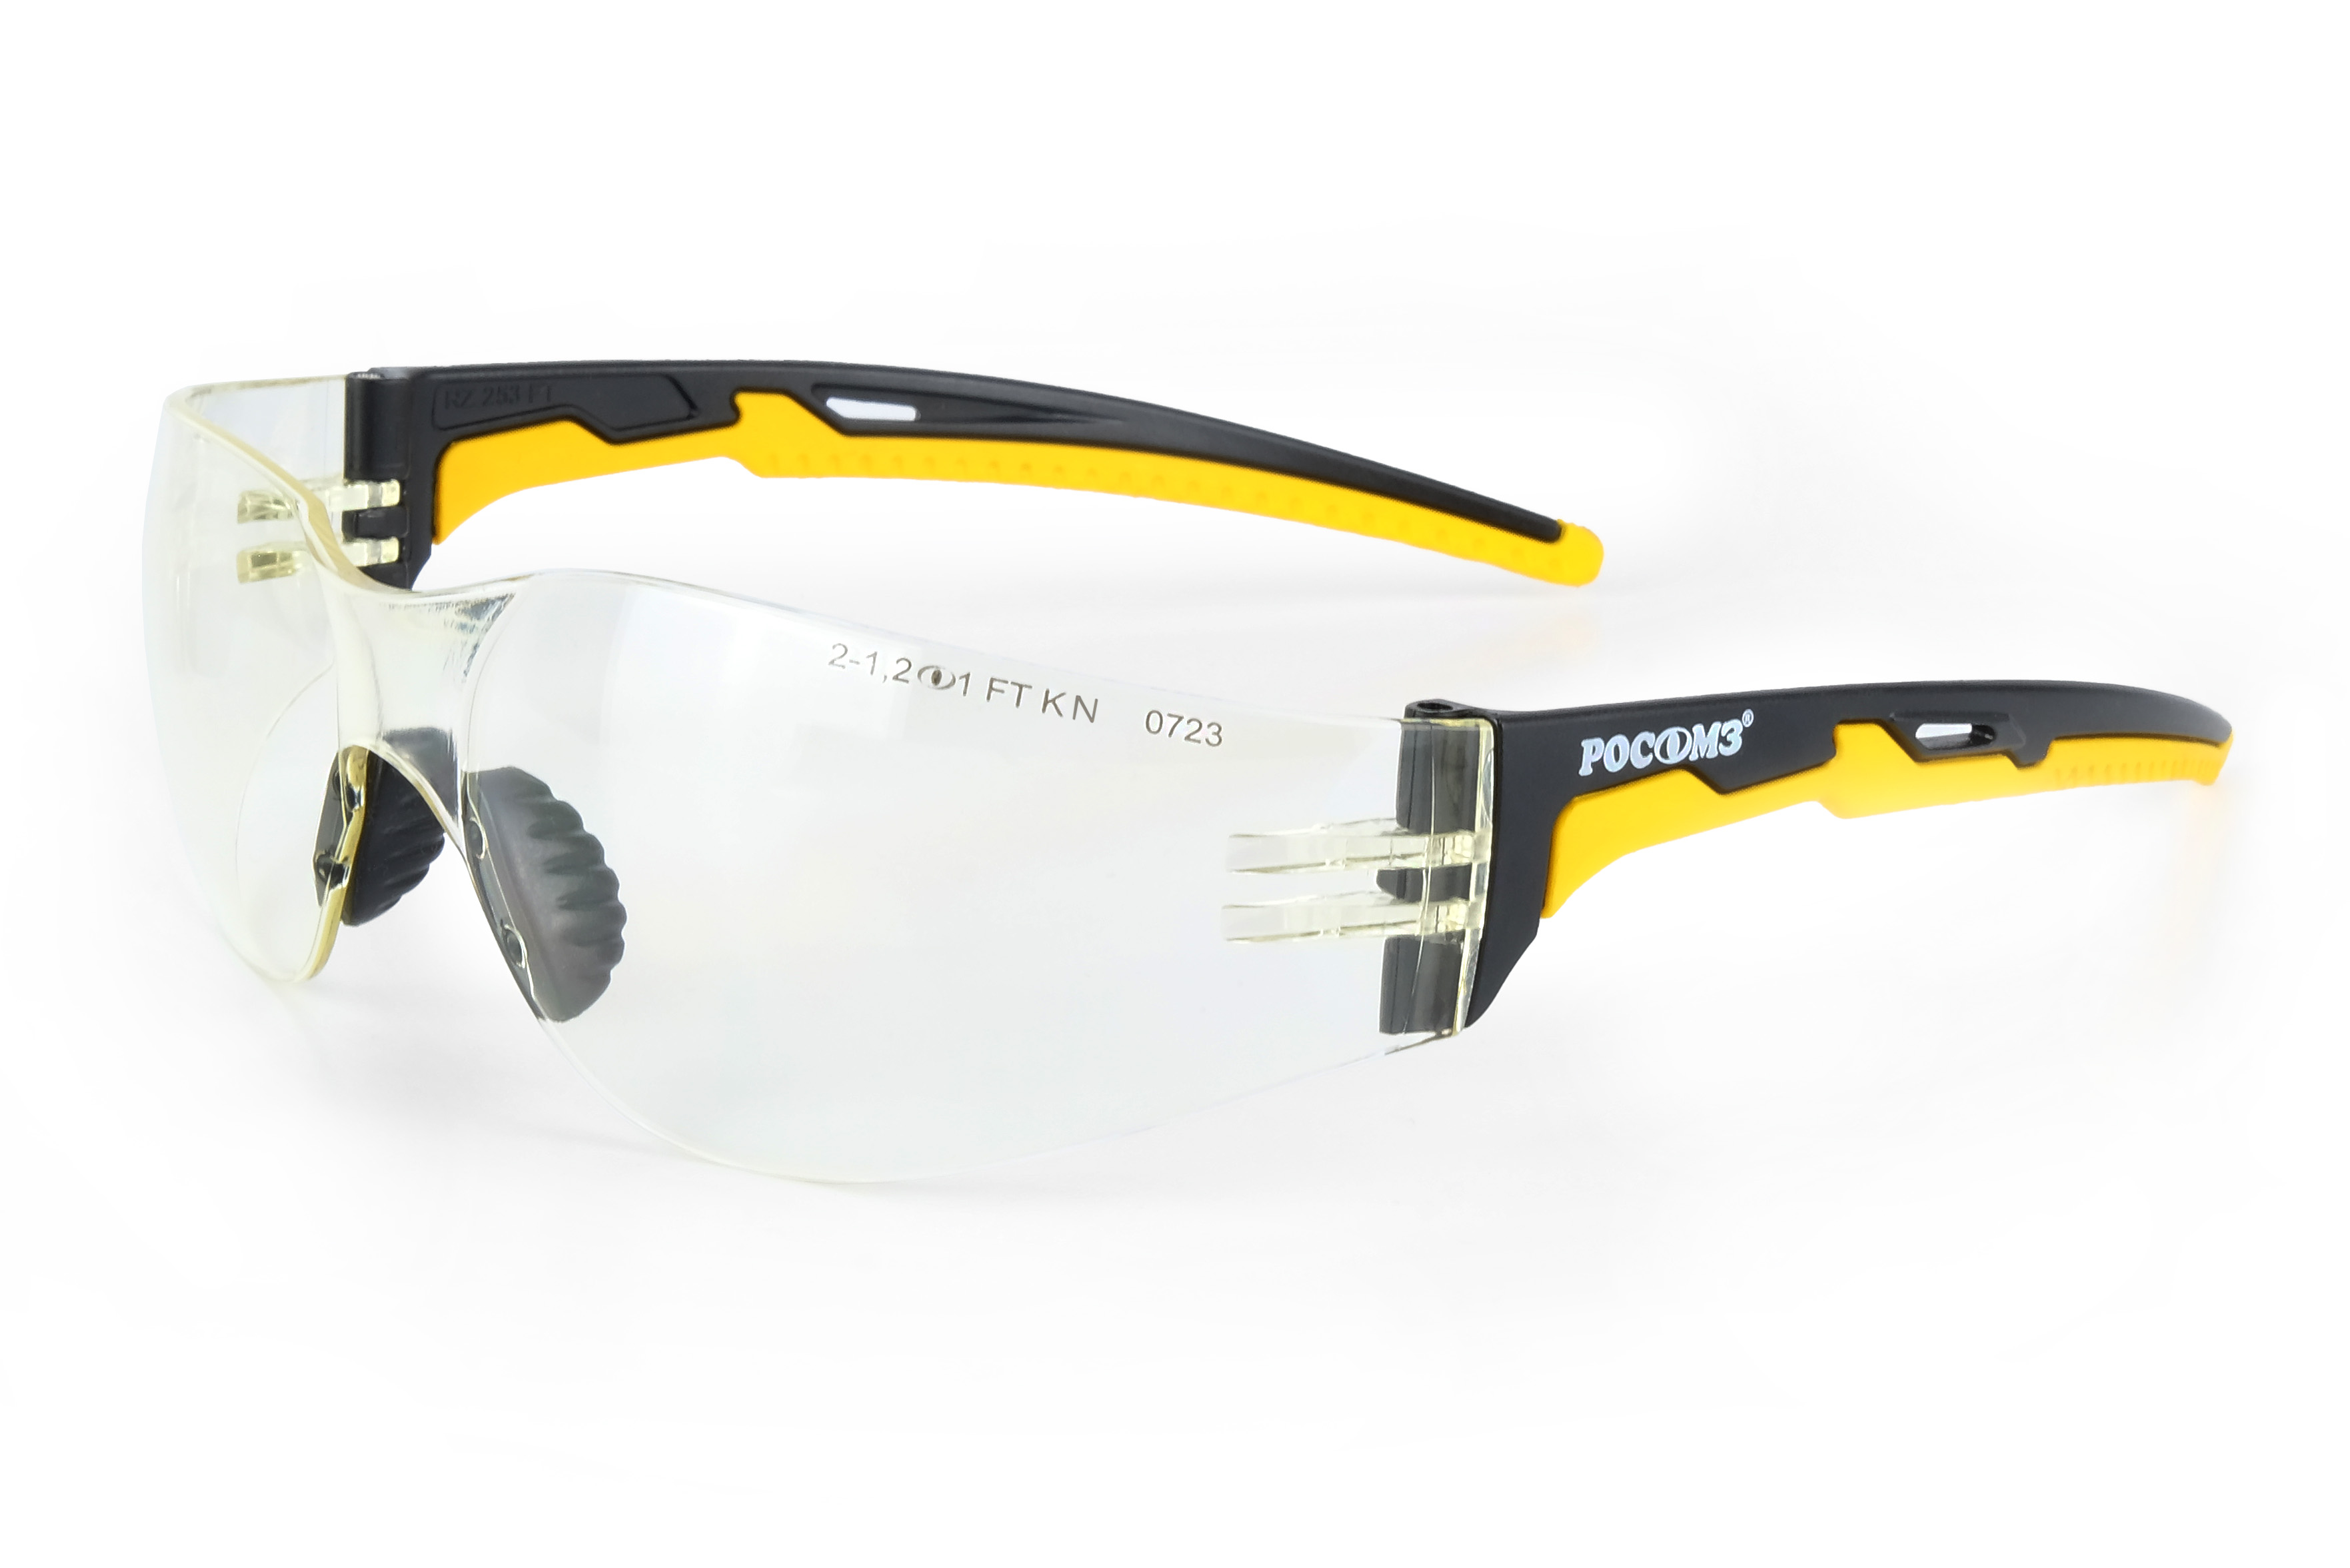 О15 HAMMER ACTIVE StrongGlass (2-1,2 PC) очки защитные открытые с мягким носоупором